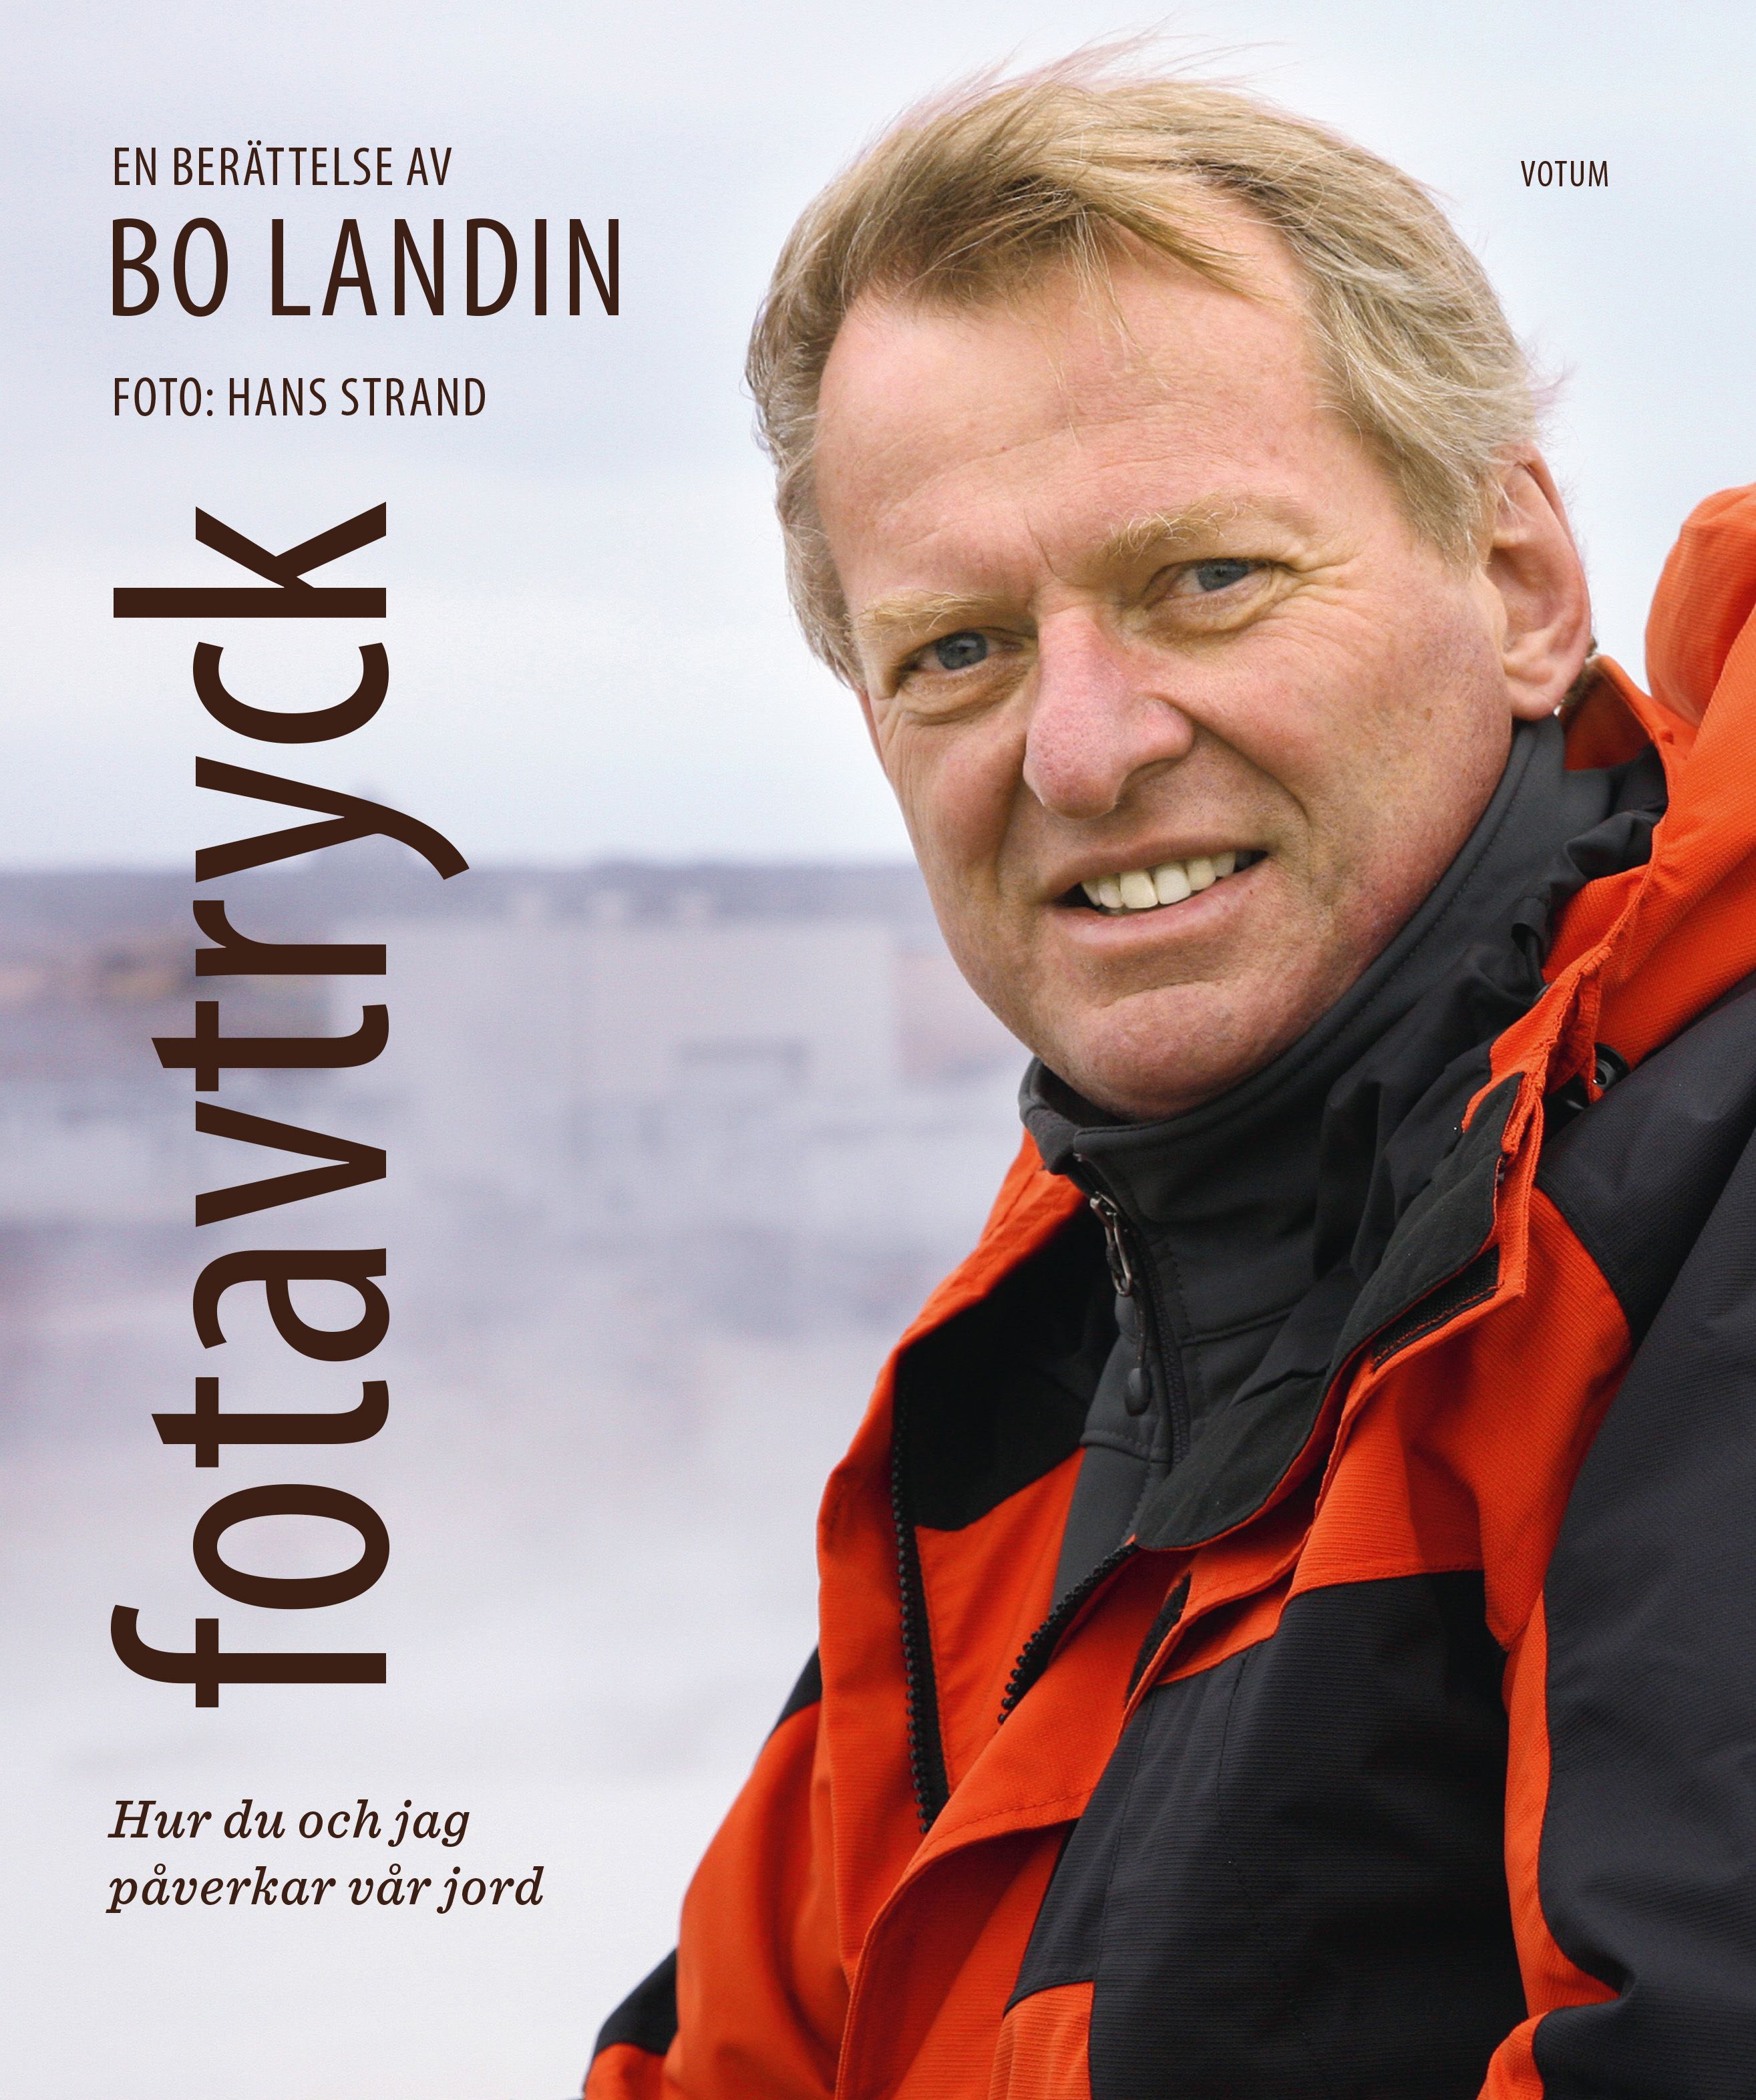 Fotavtryck - Hur du och jag påverkar vår jord, eBook by Bo Landin